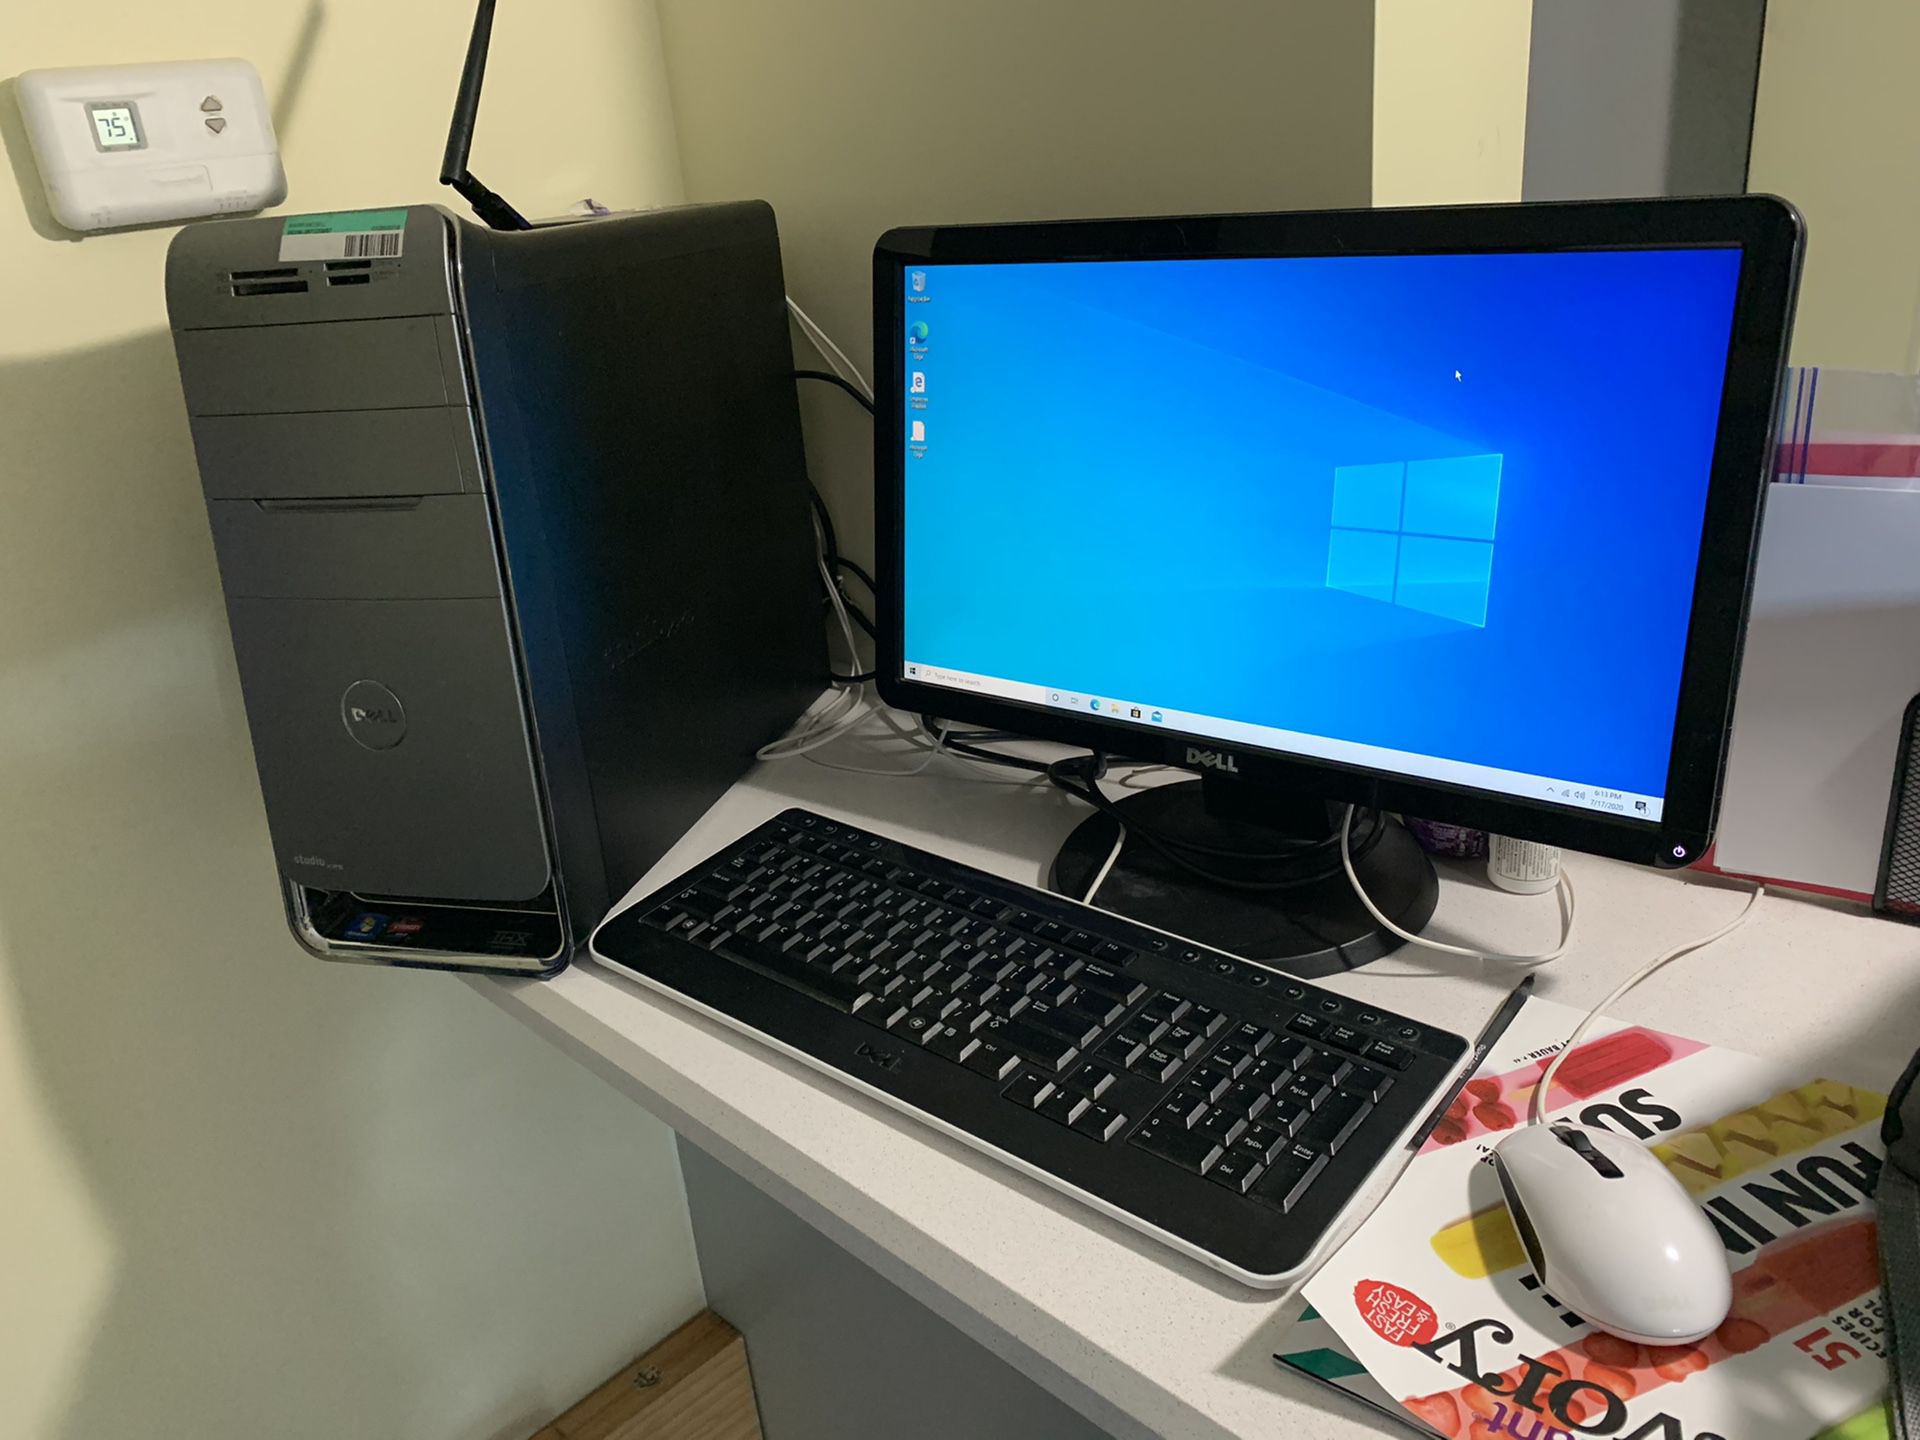 Dell Computer XP’s